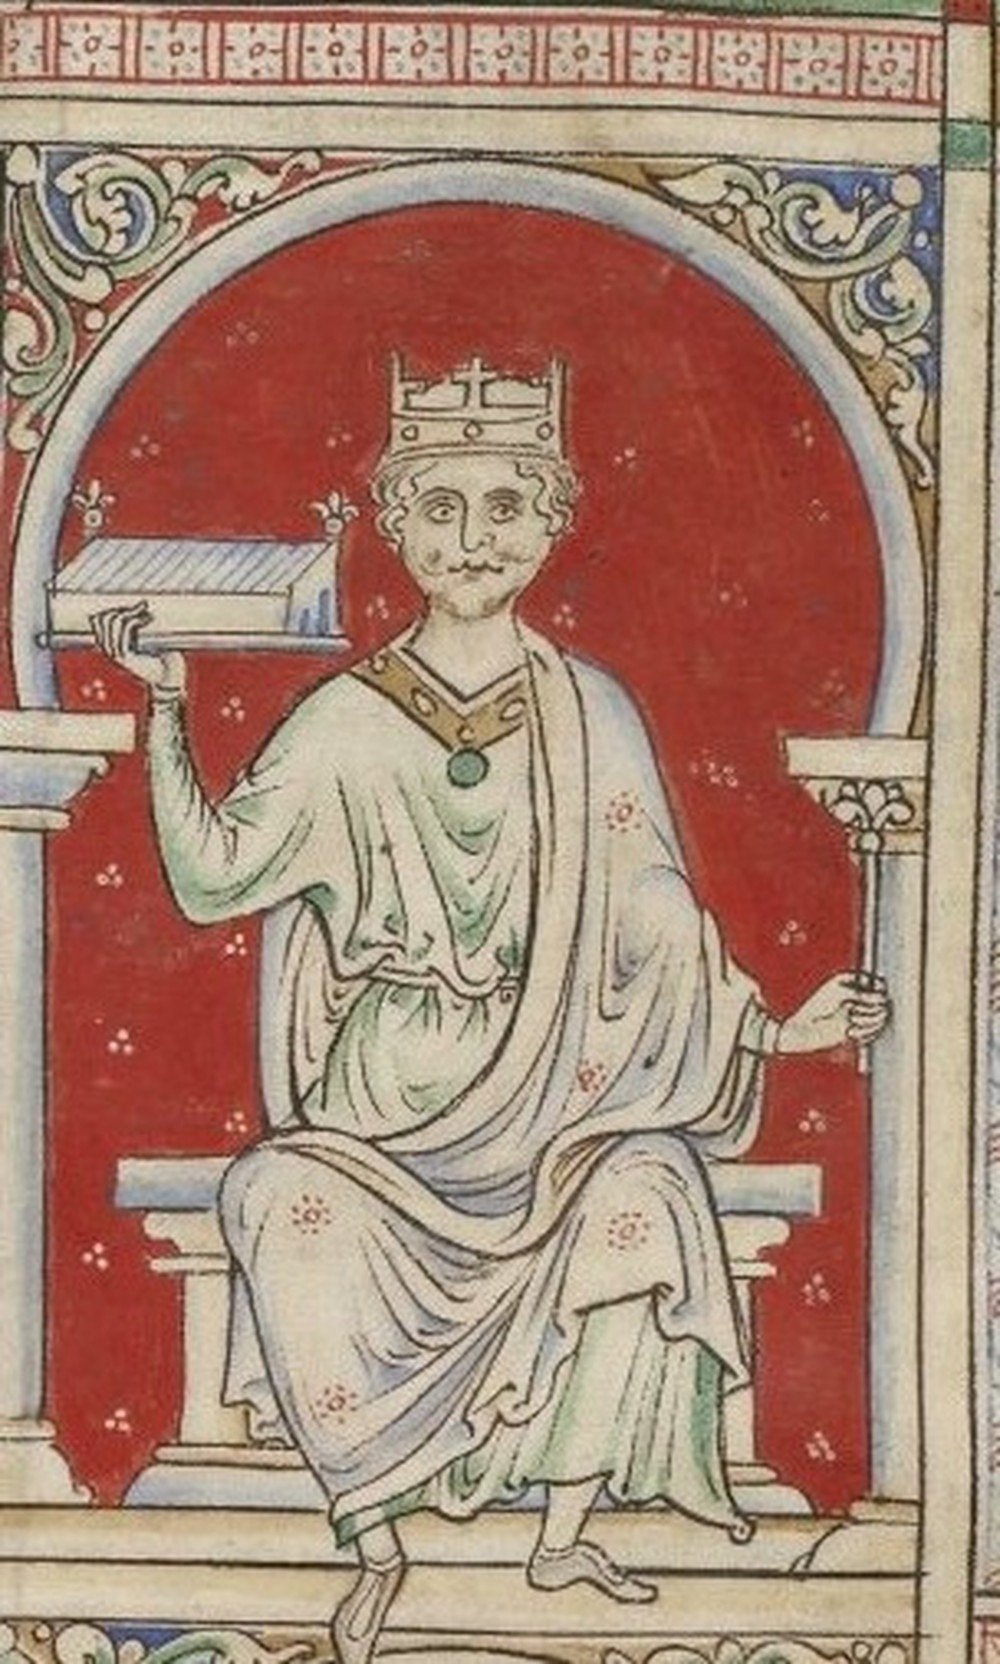 (ويليام الثاني) ثاني الملوك النورمانديين على إنجلترا.